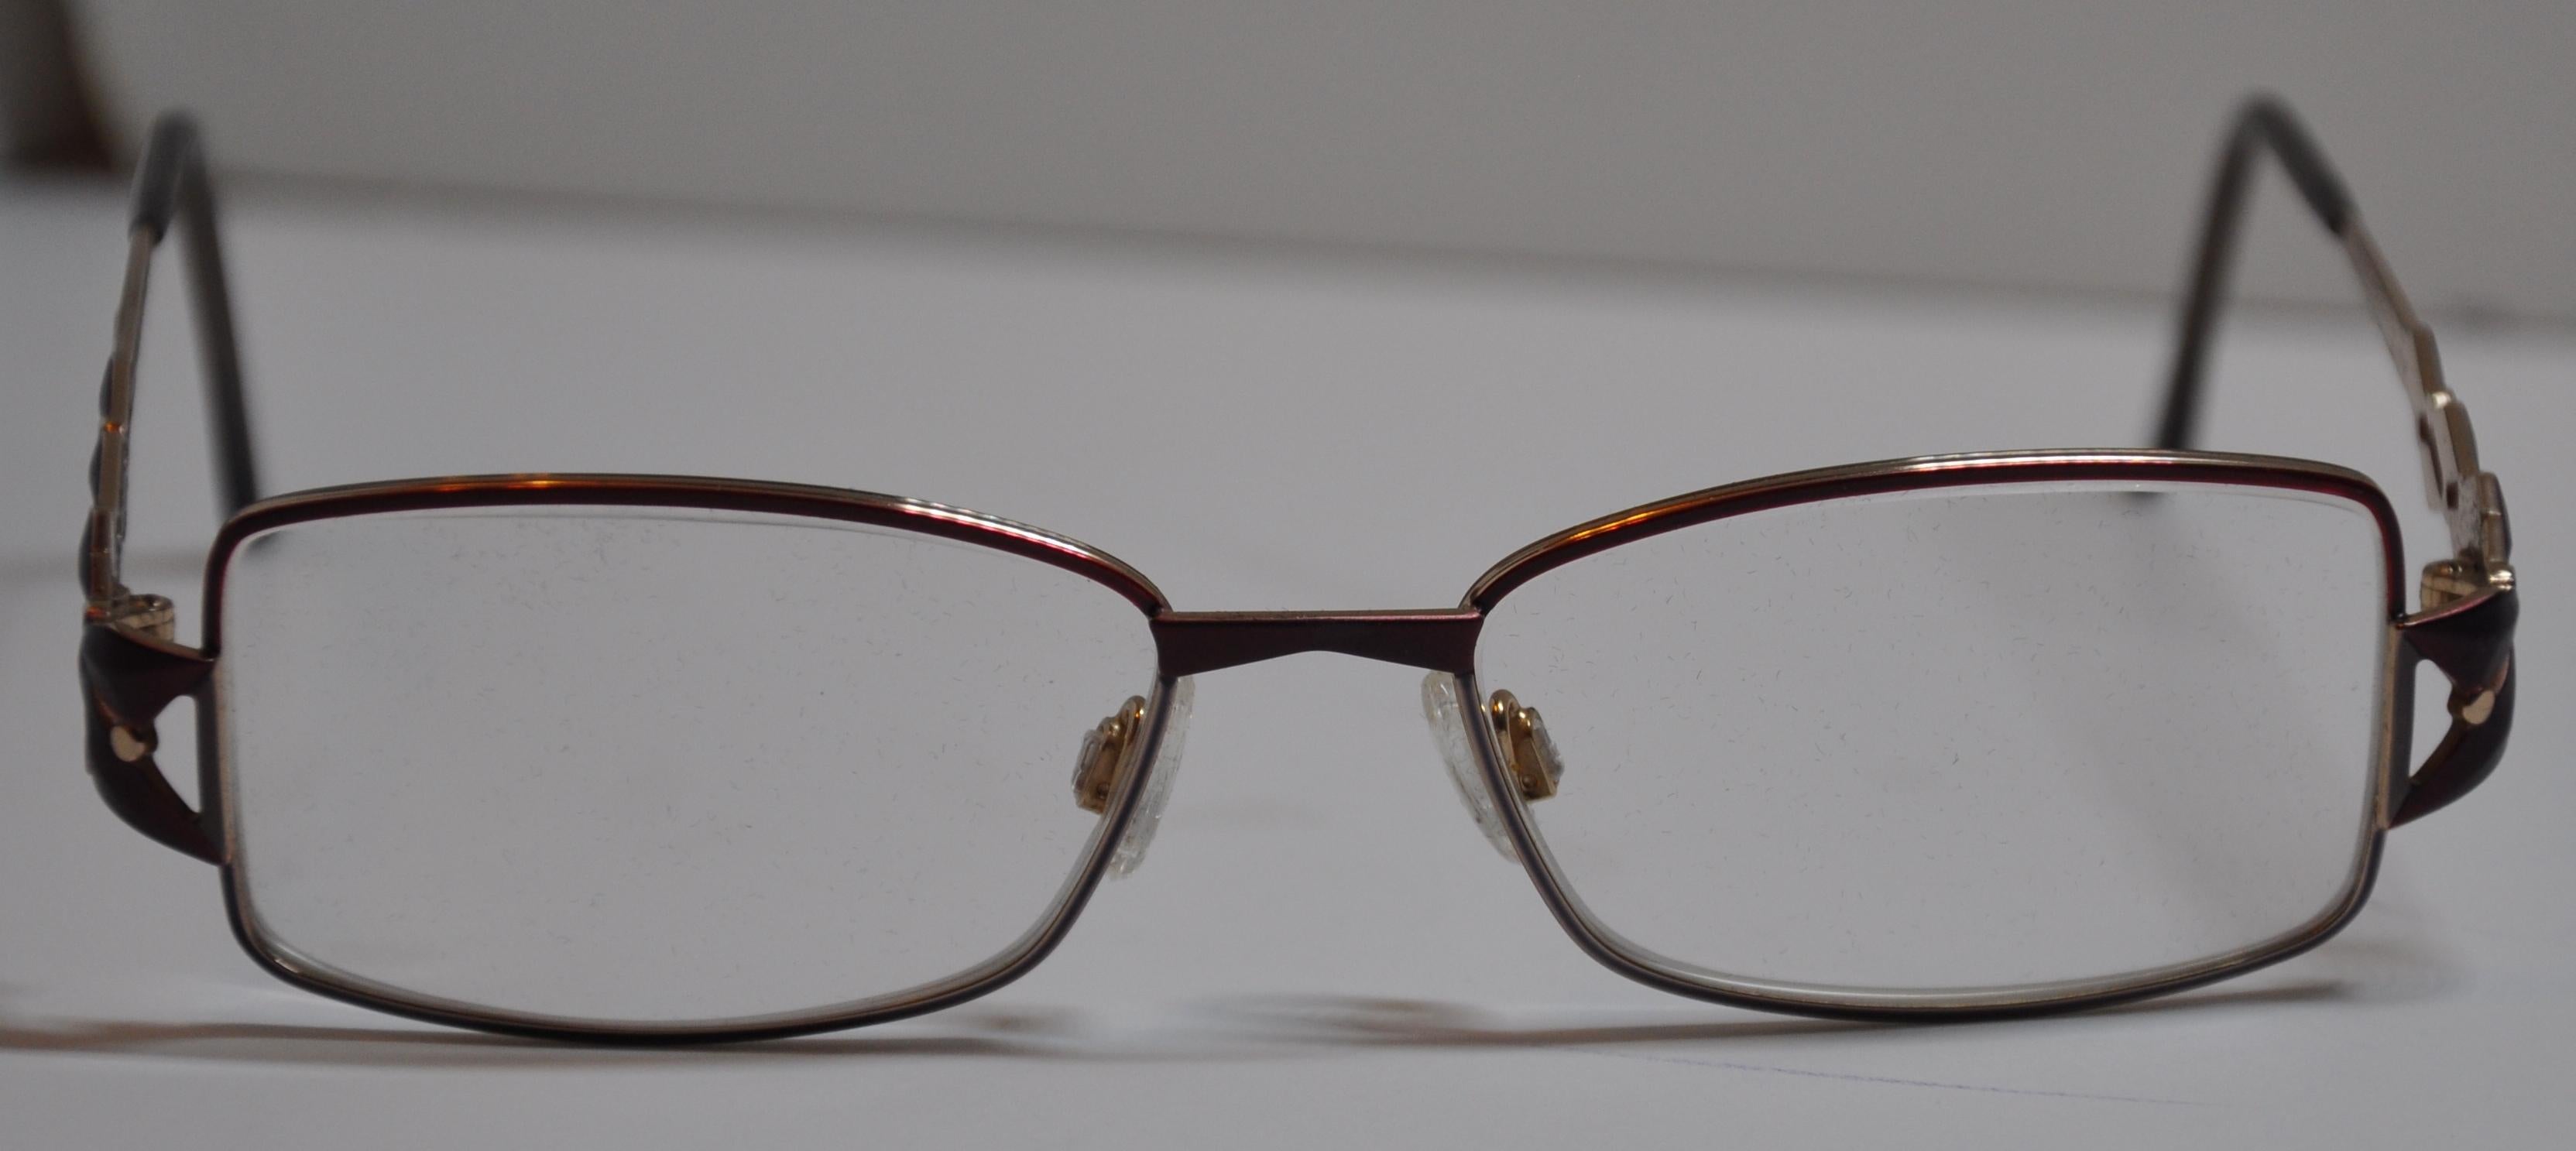        Cazal wunderbar detailliert Gold Hardware verschreibungspflichtige Brille ist mit mehreren tief-lavendelfarbenen 